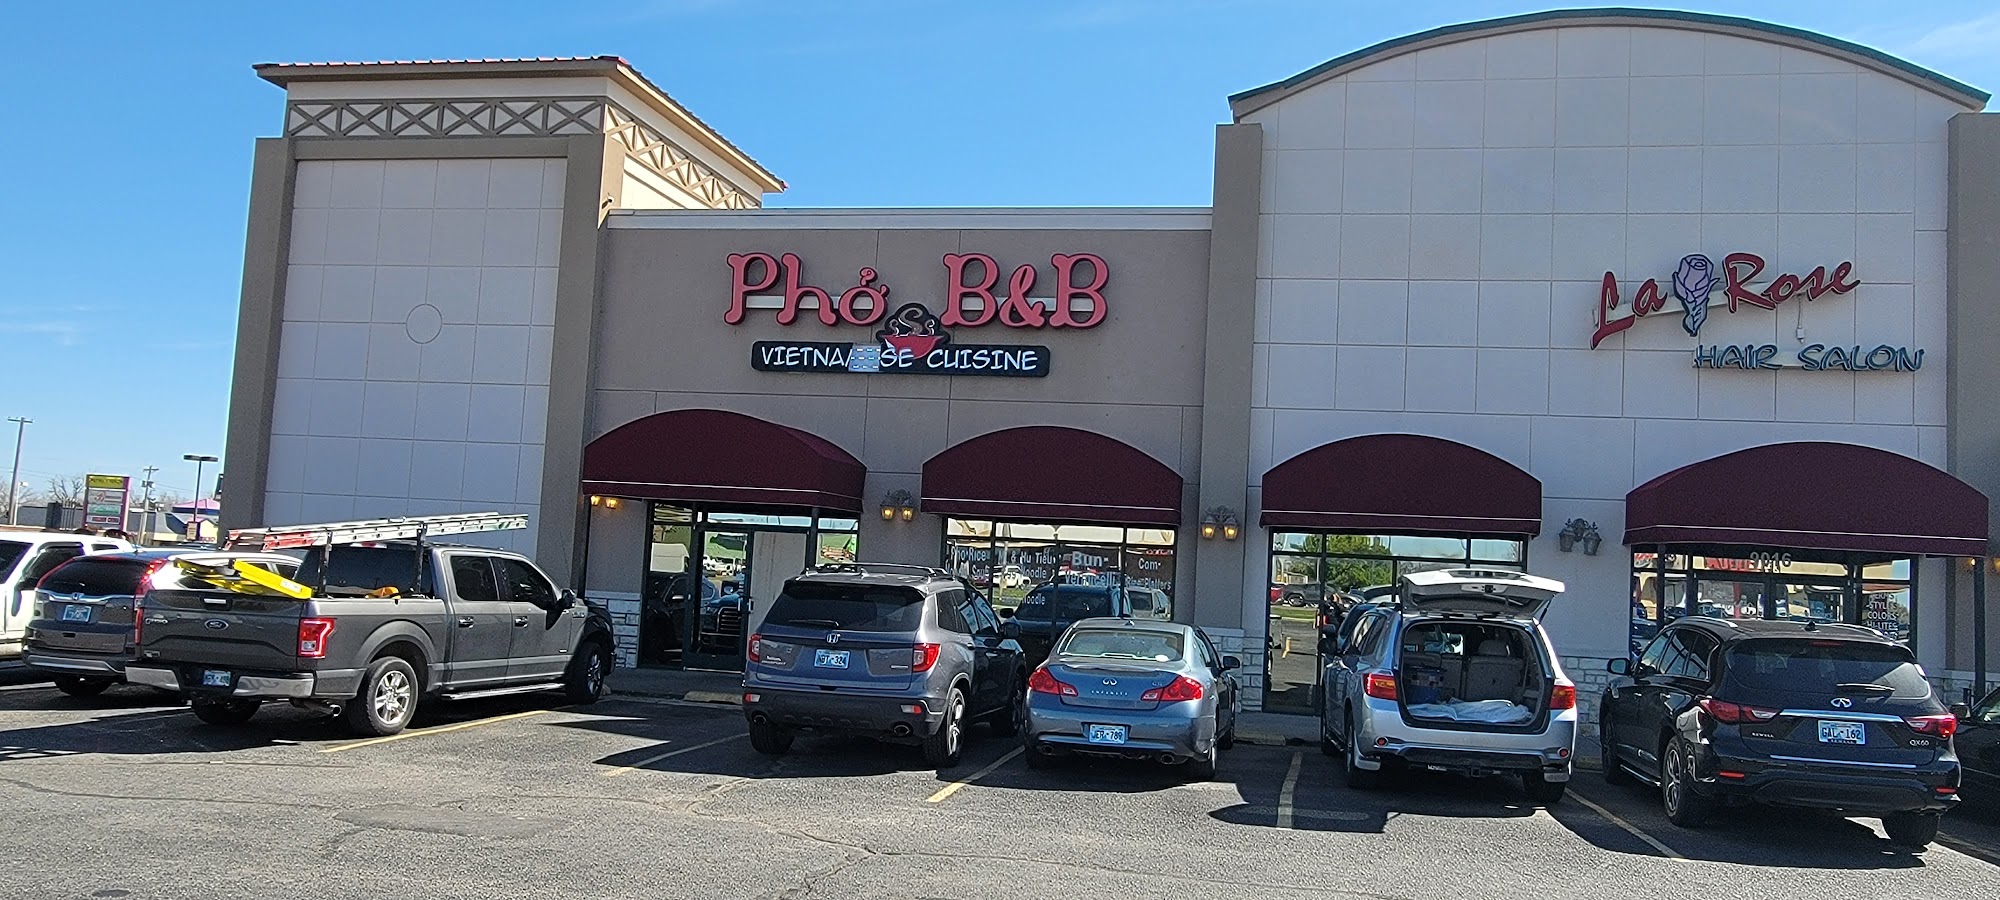 Pho B&B Vietnamese Cuisine 9010 S Pennsylvania Ave, Oklahoma City, OK 73159